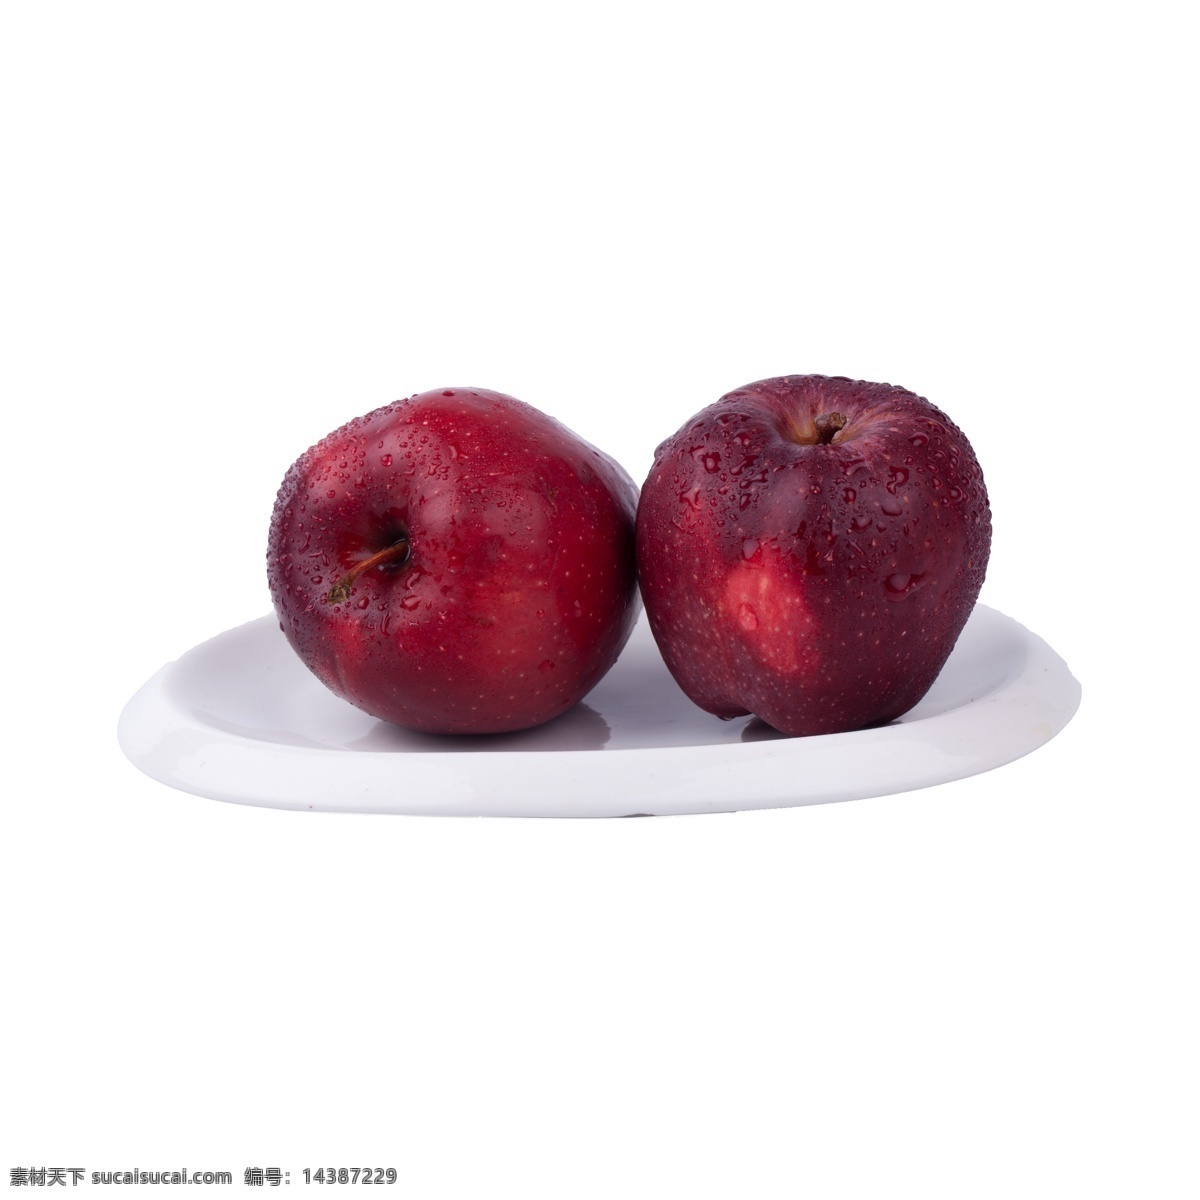 红苹果 免 抠 苹果 红富士 红苹果免抠 新鲜 水果 甘甜 营养 多汁 维生素 红色 摆拍 实拍